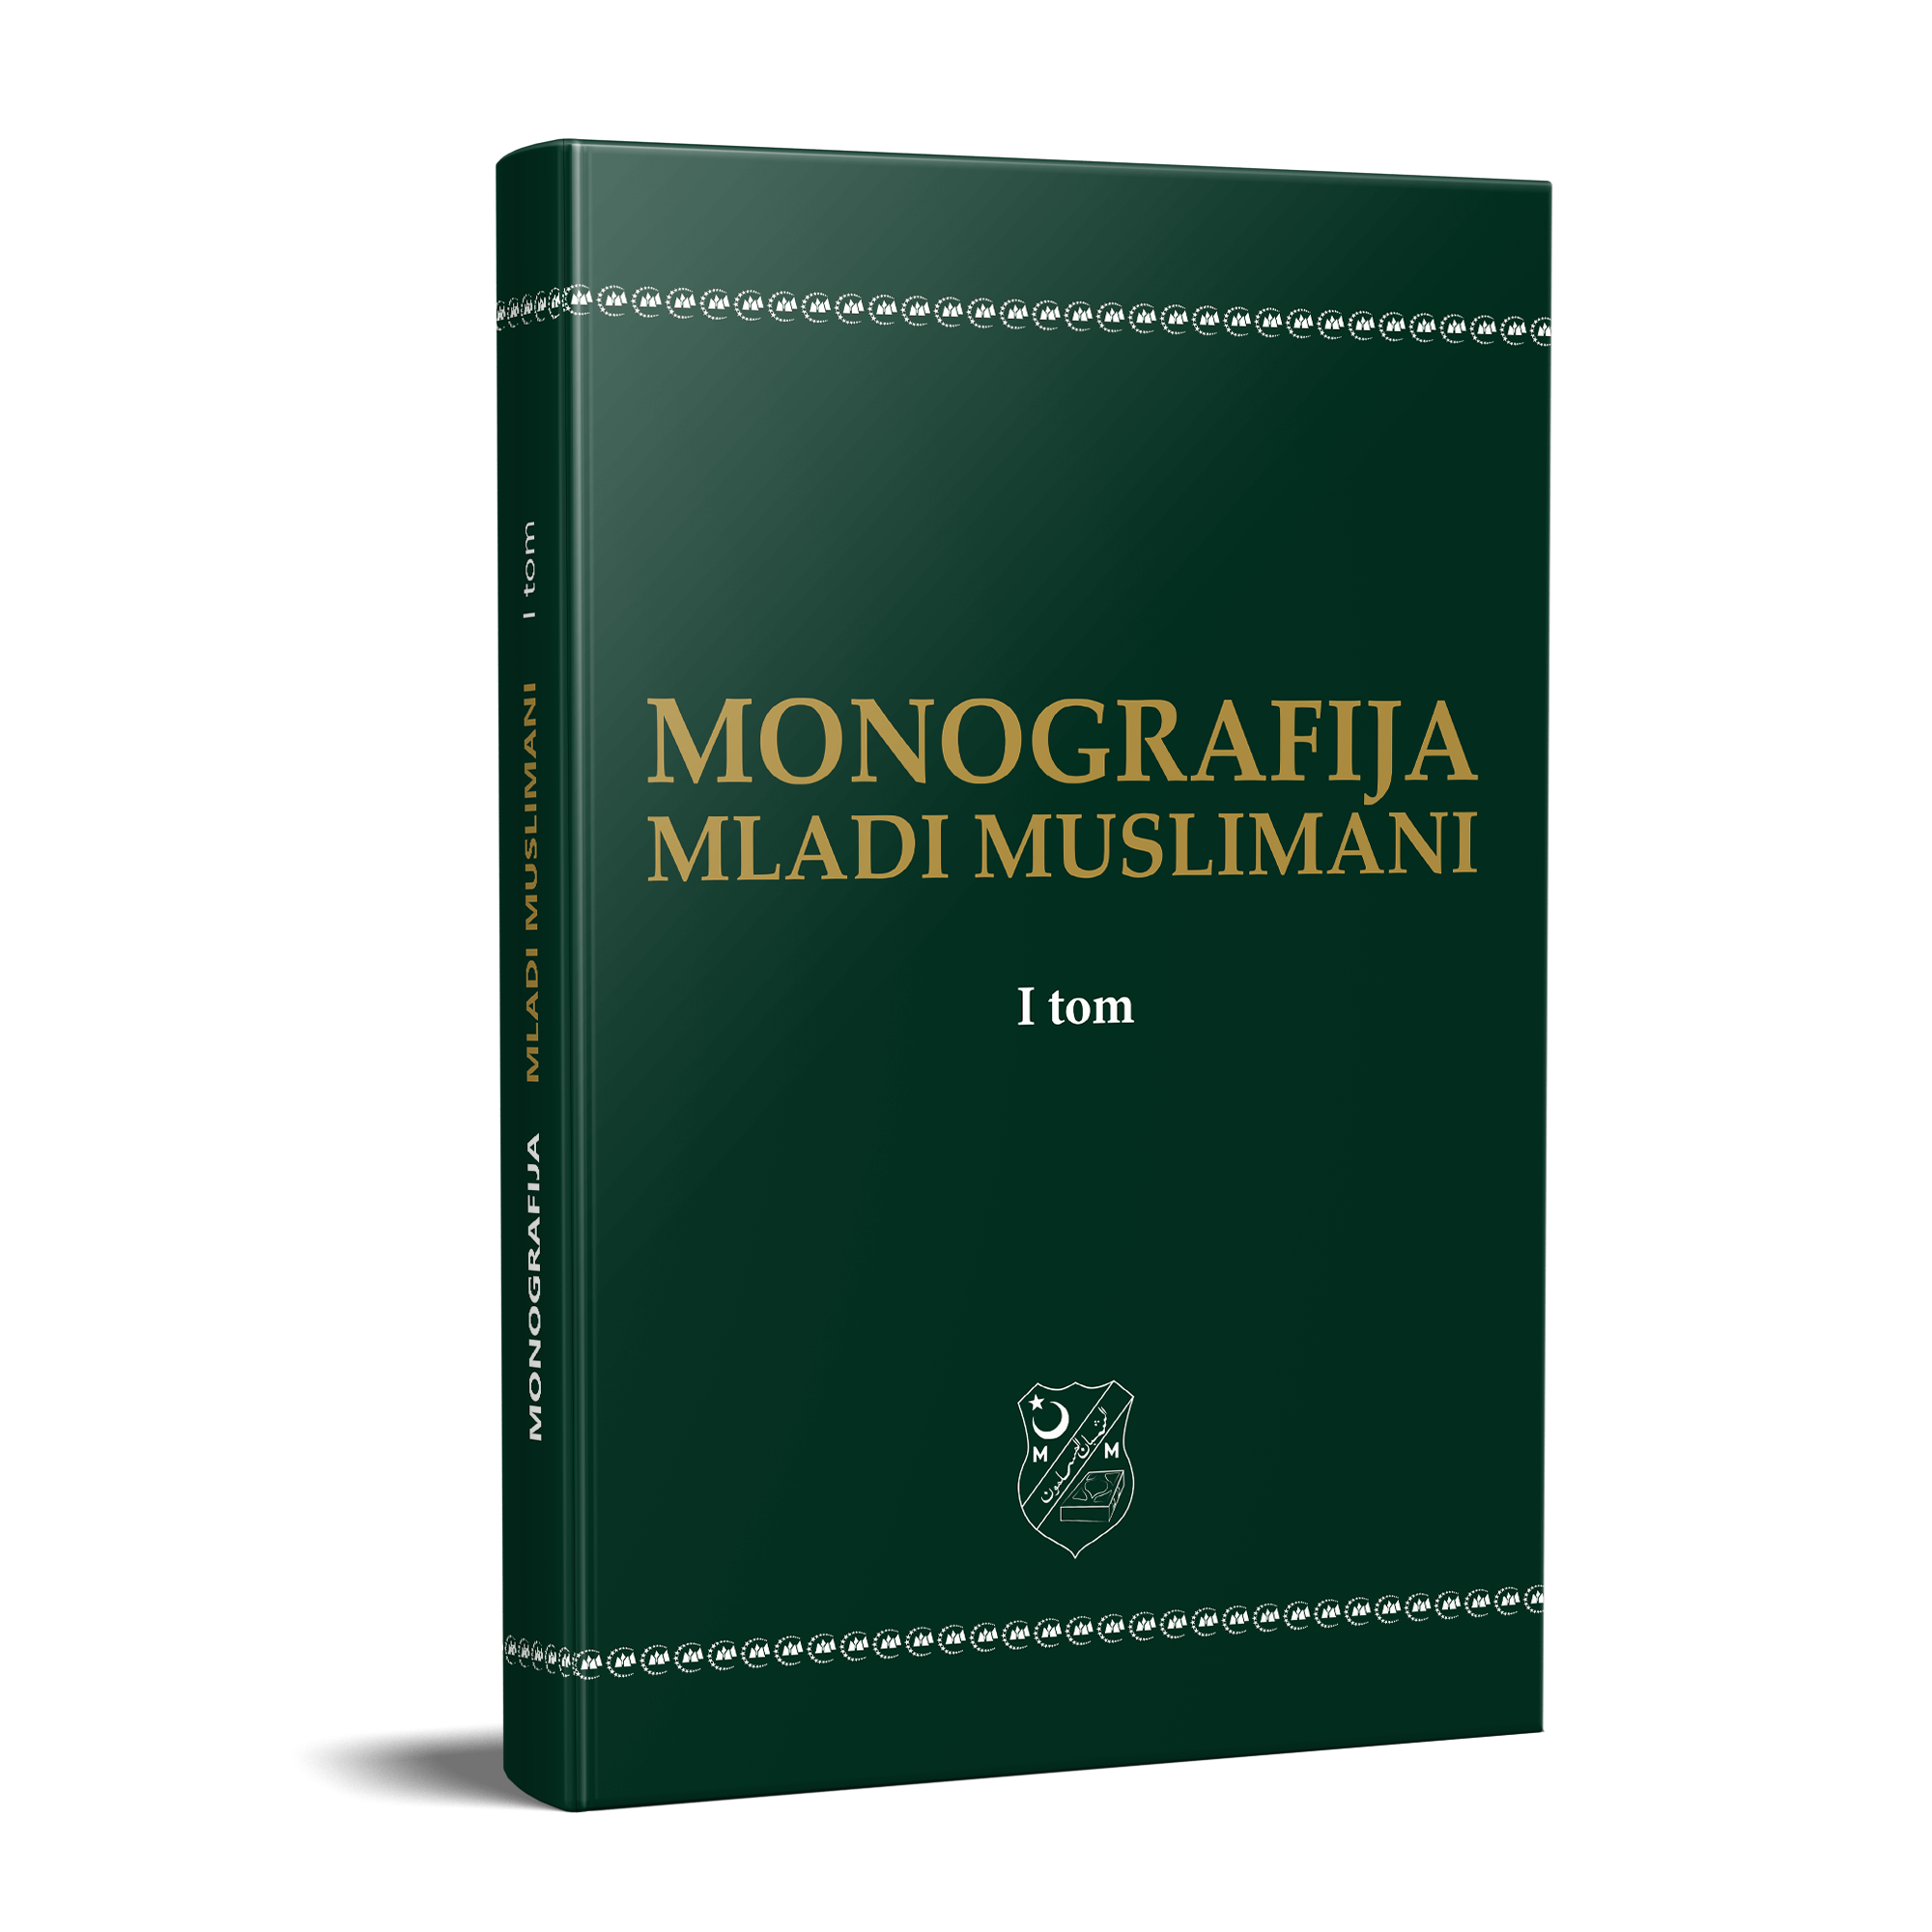 Objavljen prvi tom knjige “Monografija Mladi muslimani” u izdanju Udruženja “Mladi muslimani” i Instituta “Ibn Sina”